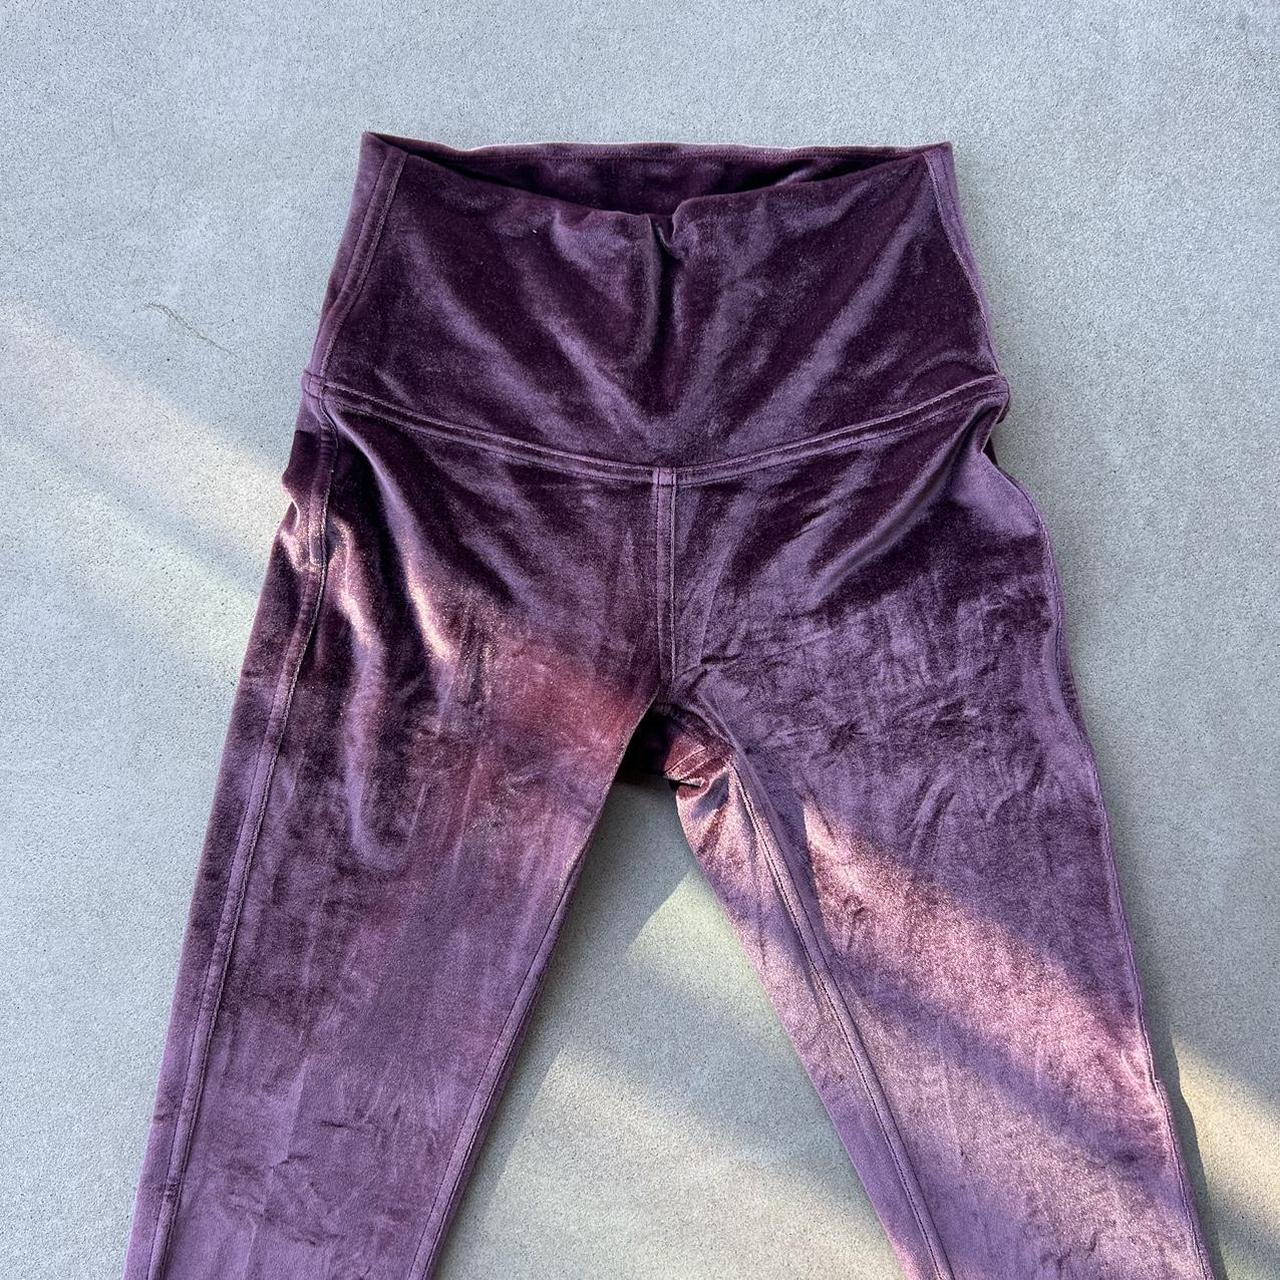 lululemon leggings 🧞‍♀️ these velvet leggings are sooo - Depop